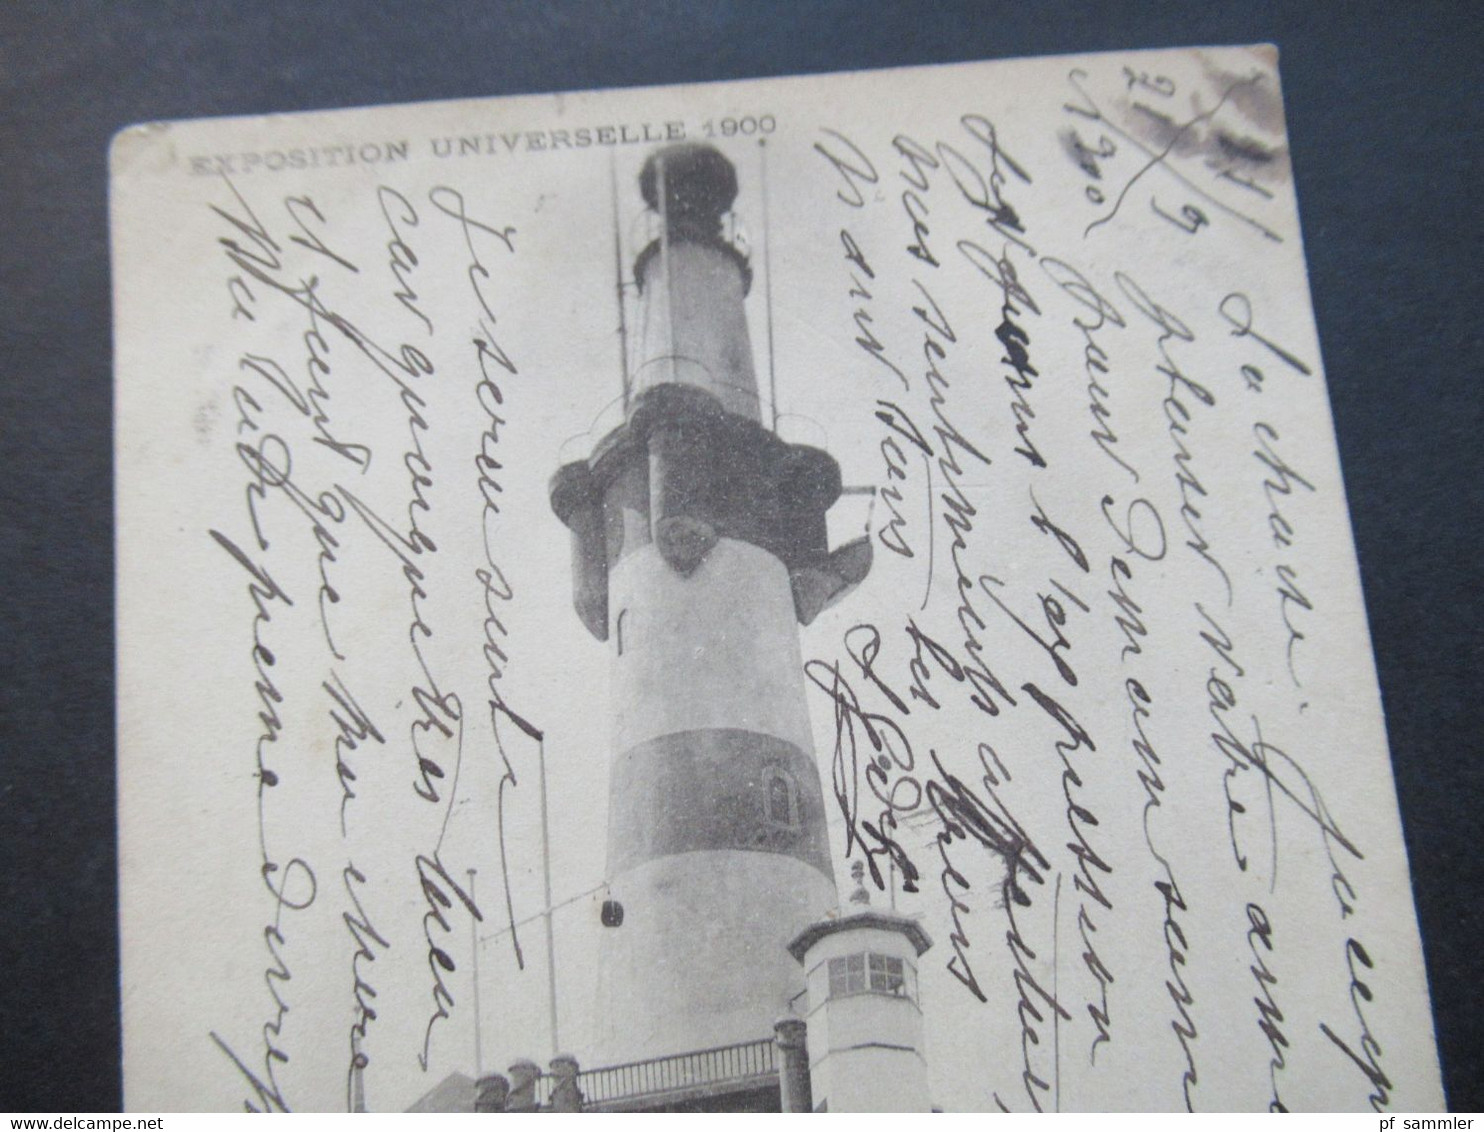 Frankreich 1900 Weltausstellung Exposition Universelle 1900 Marine Marchande Allemande Leuchtturm / Schifffahrt - Expositions